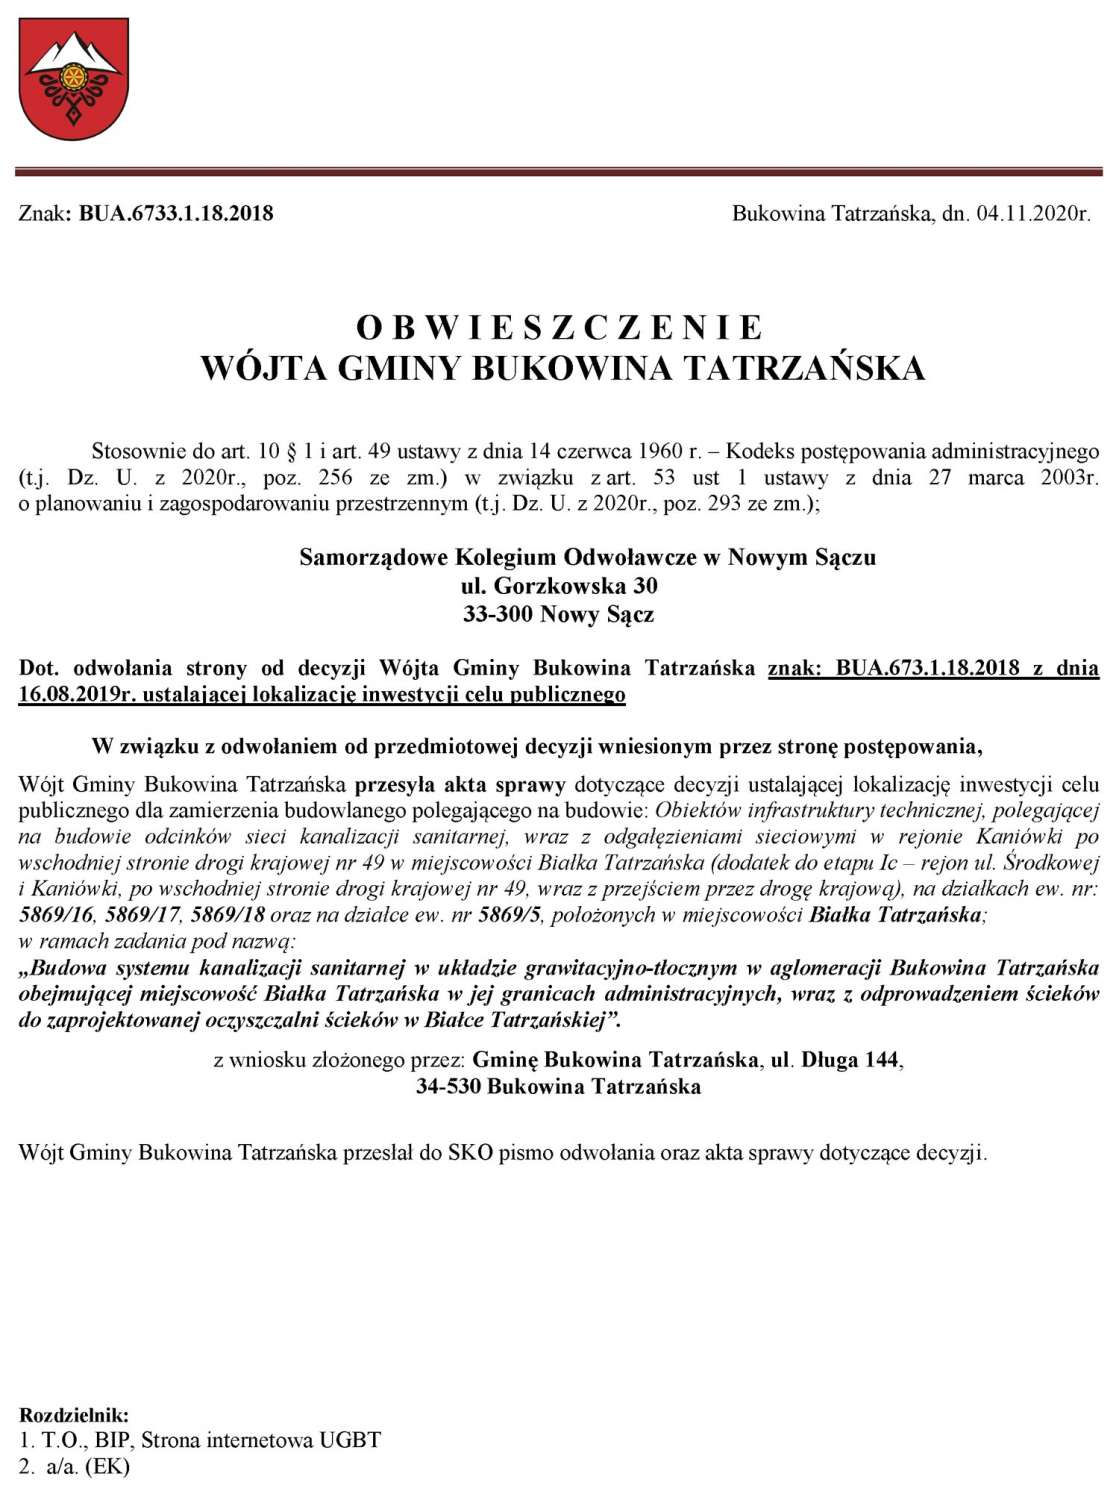 Obwieszczenie Wójta Gminy Bukowina Tatrzańska BUA 6733.1.18.2018